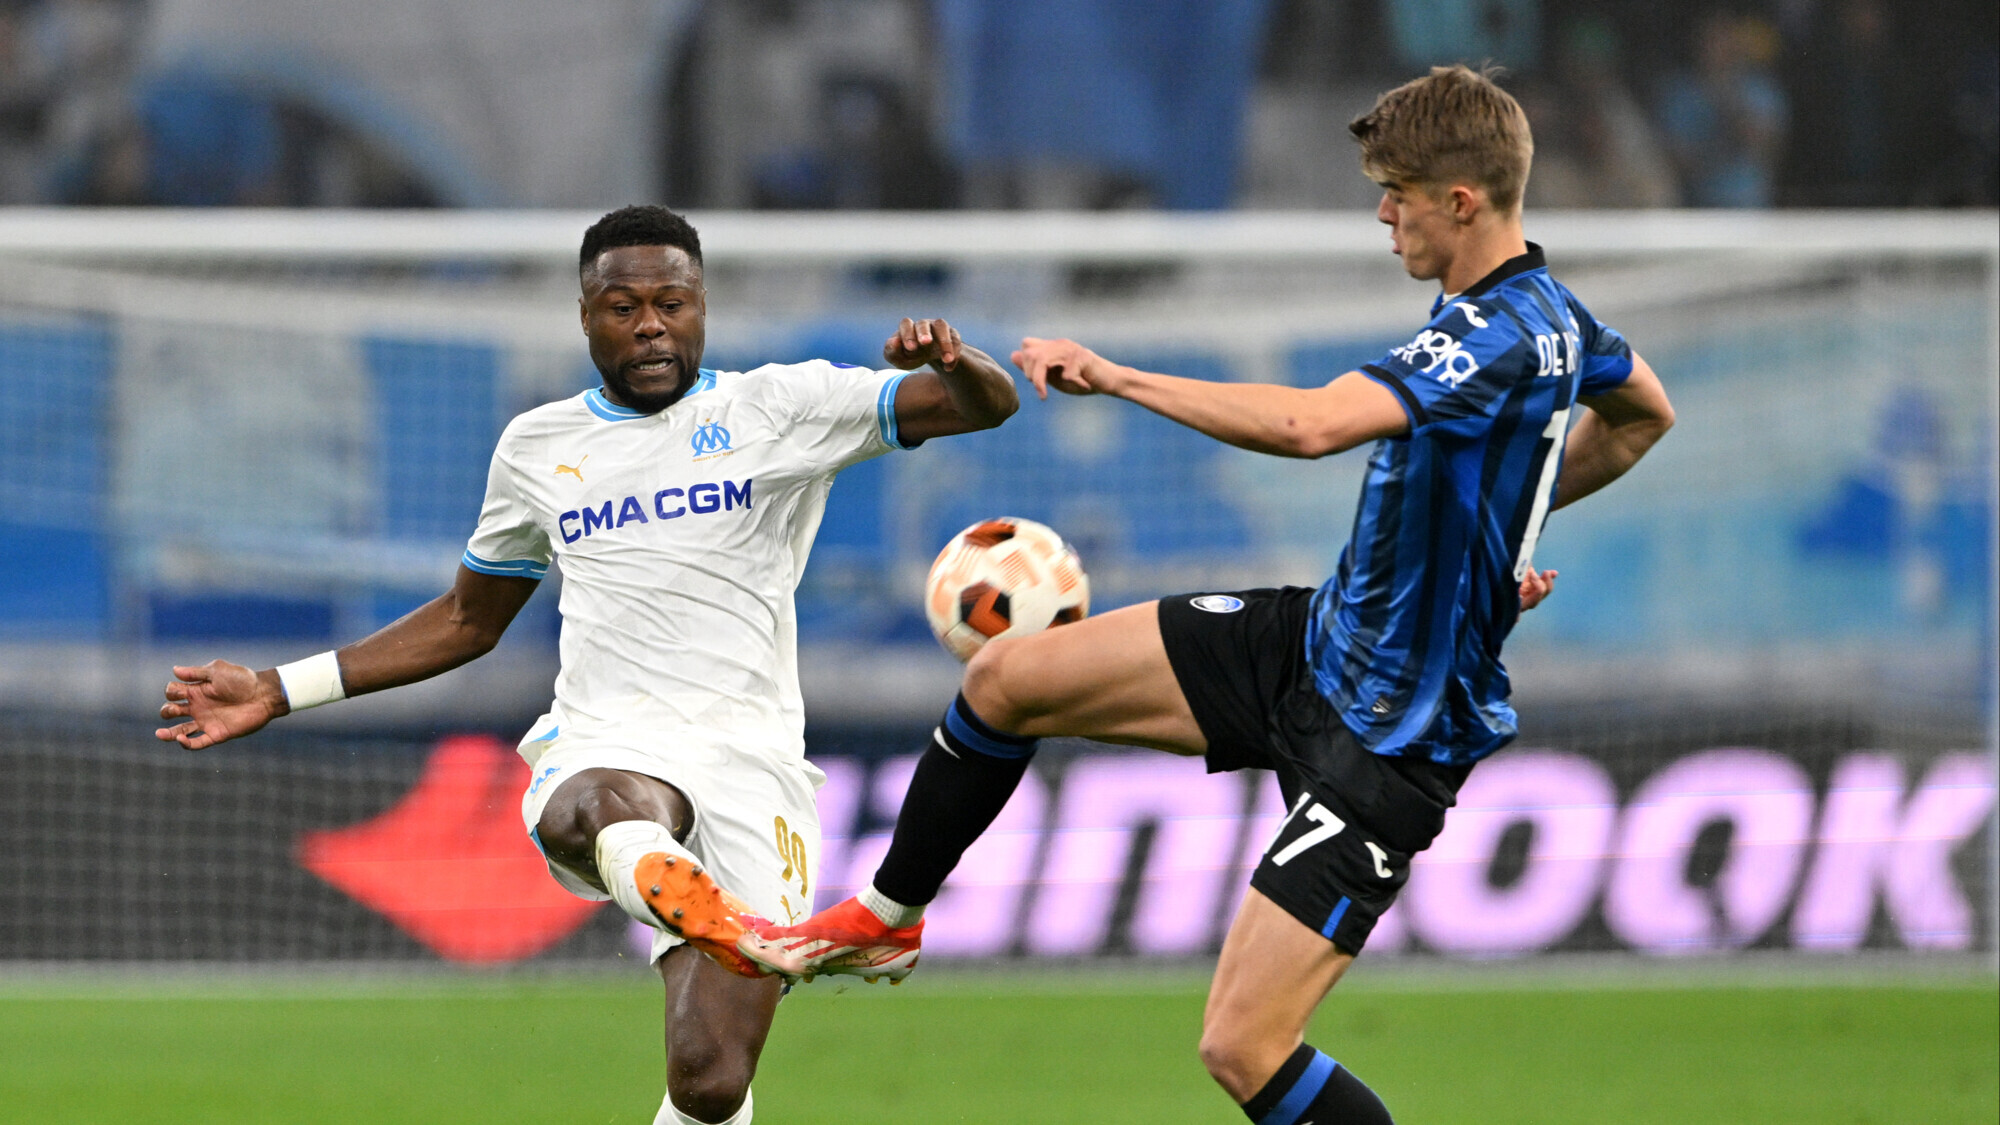 “Марсель” и “Аталанта” сыграли вничью в первом полуфинальном матче Лиги Европы. Миранчук вышел на 83-й минуте